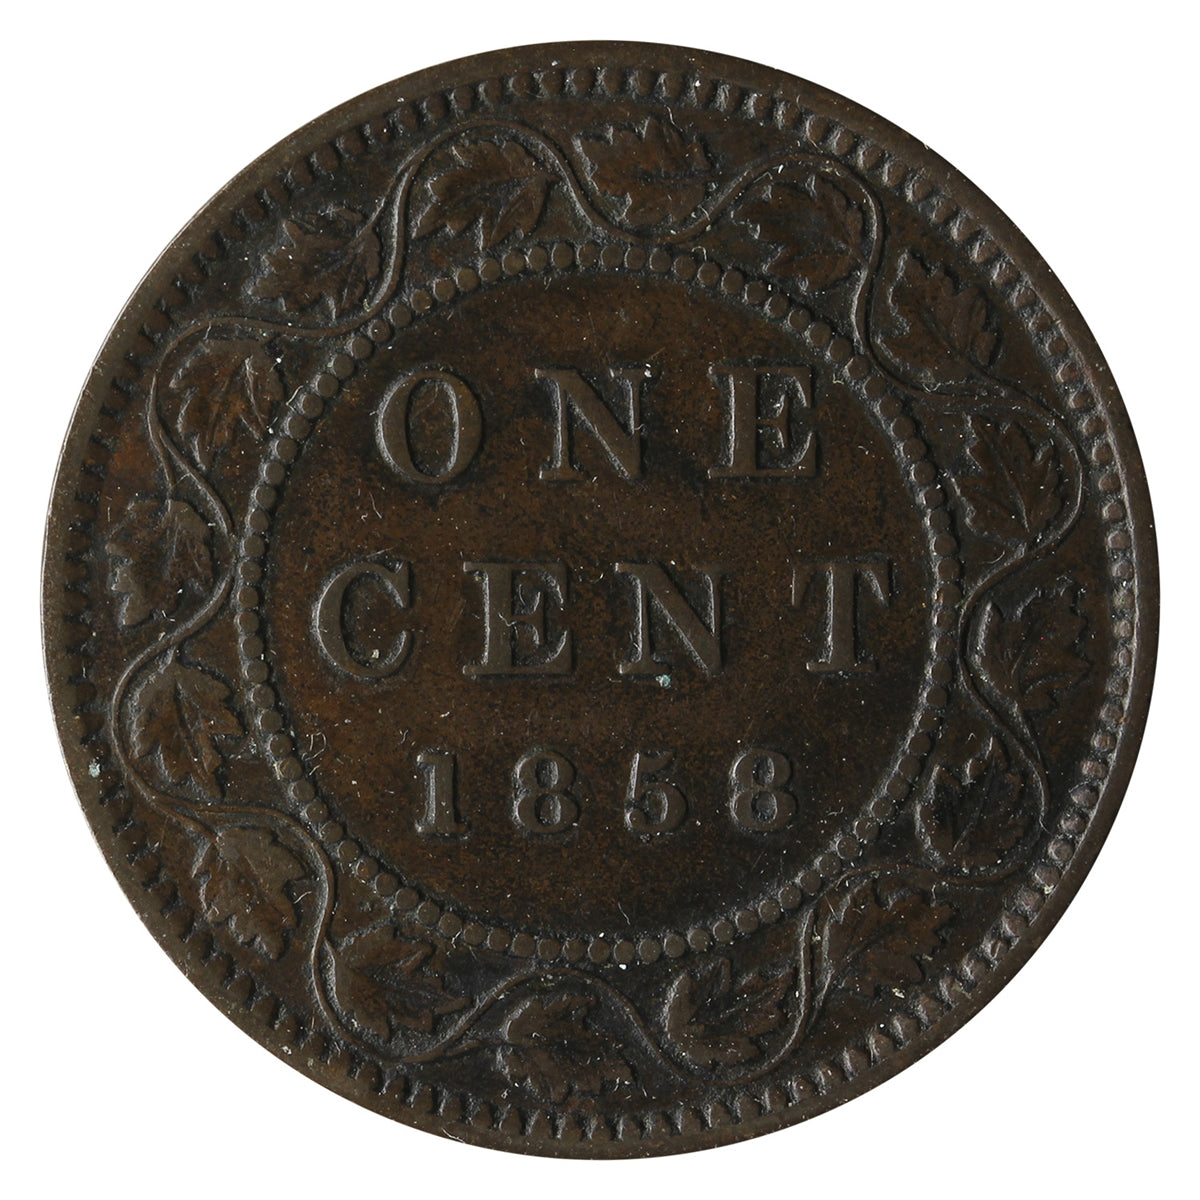 1858 Canada 1-cent Very Fine (VF-20) $